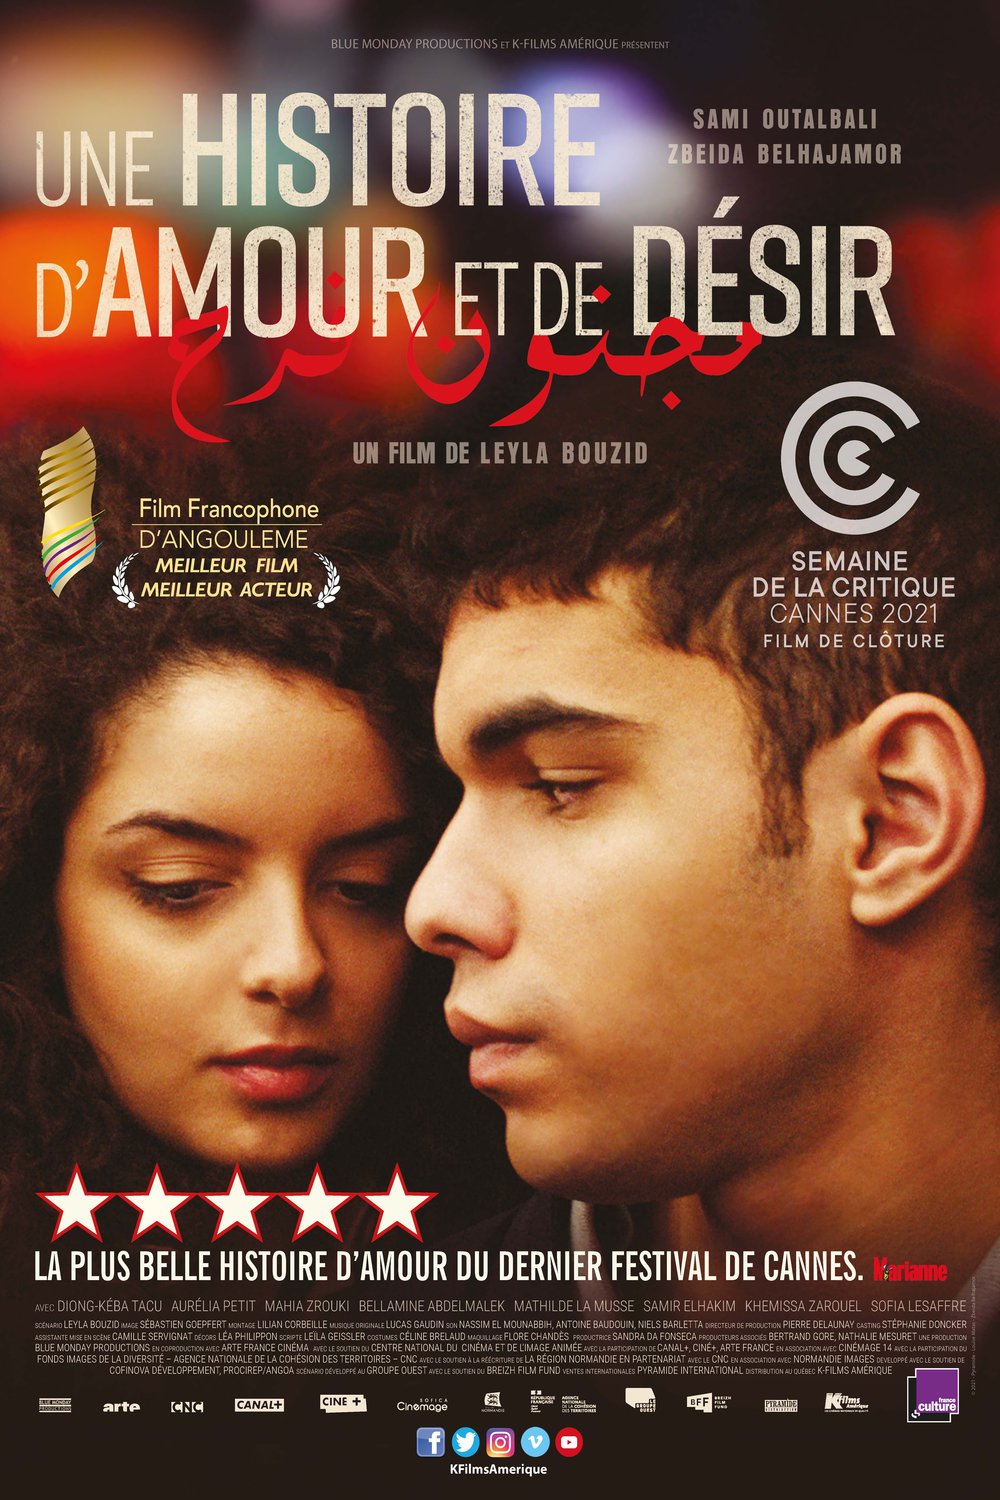 Poster of the movie Une histoire d'amour et de désir